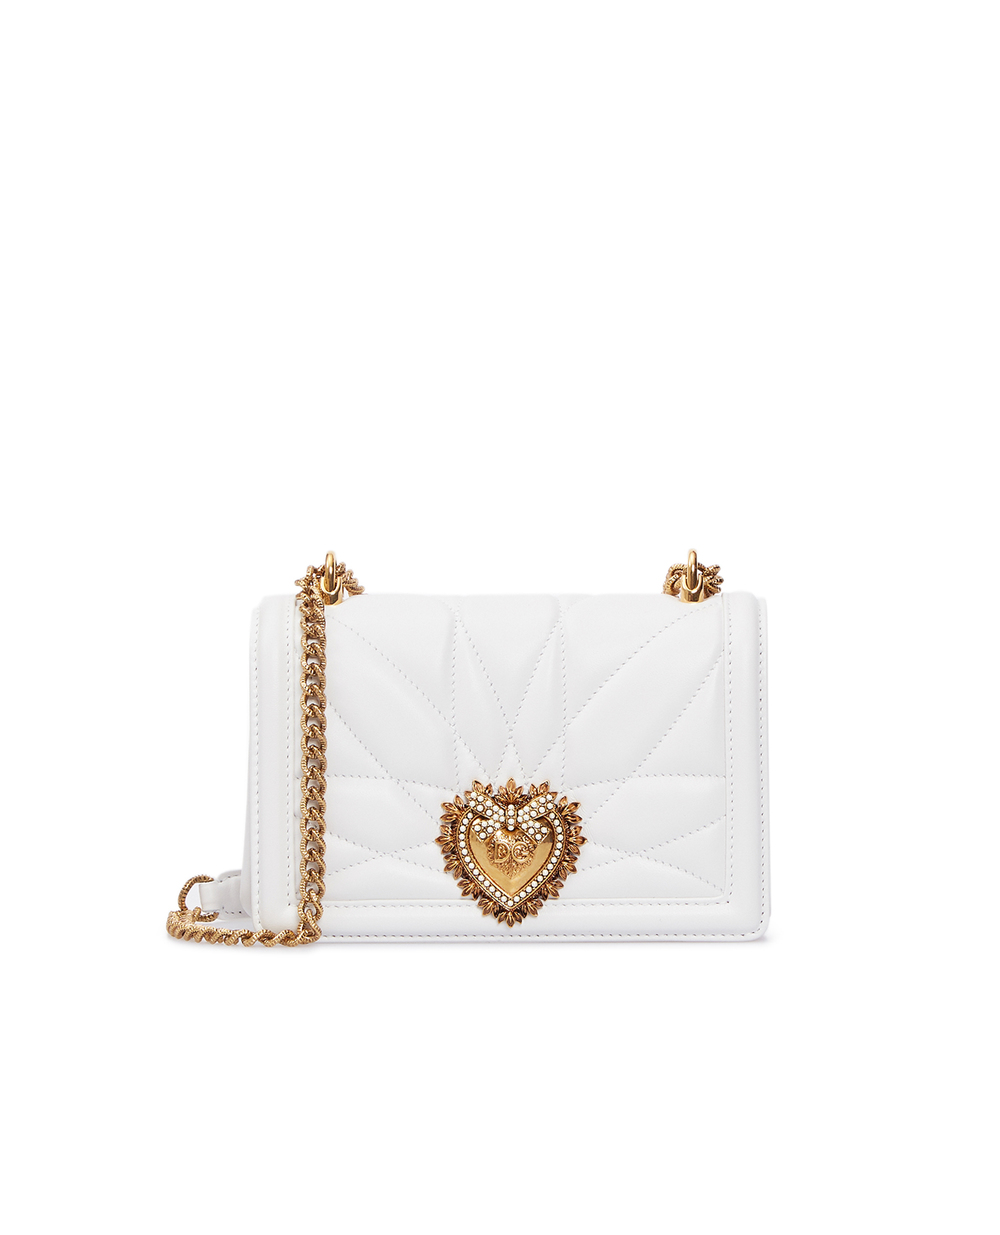 Кожаная сумка Devotion mini Dolce&Gabbana BB6880-AV967, белый цвет • Купить в интернет-магазине Kameron